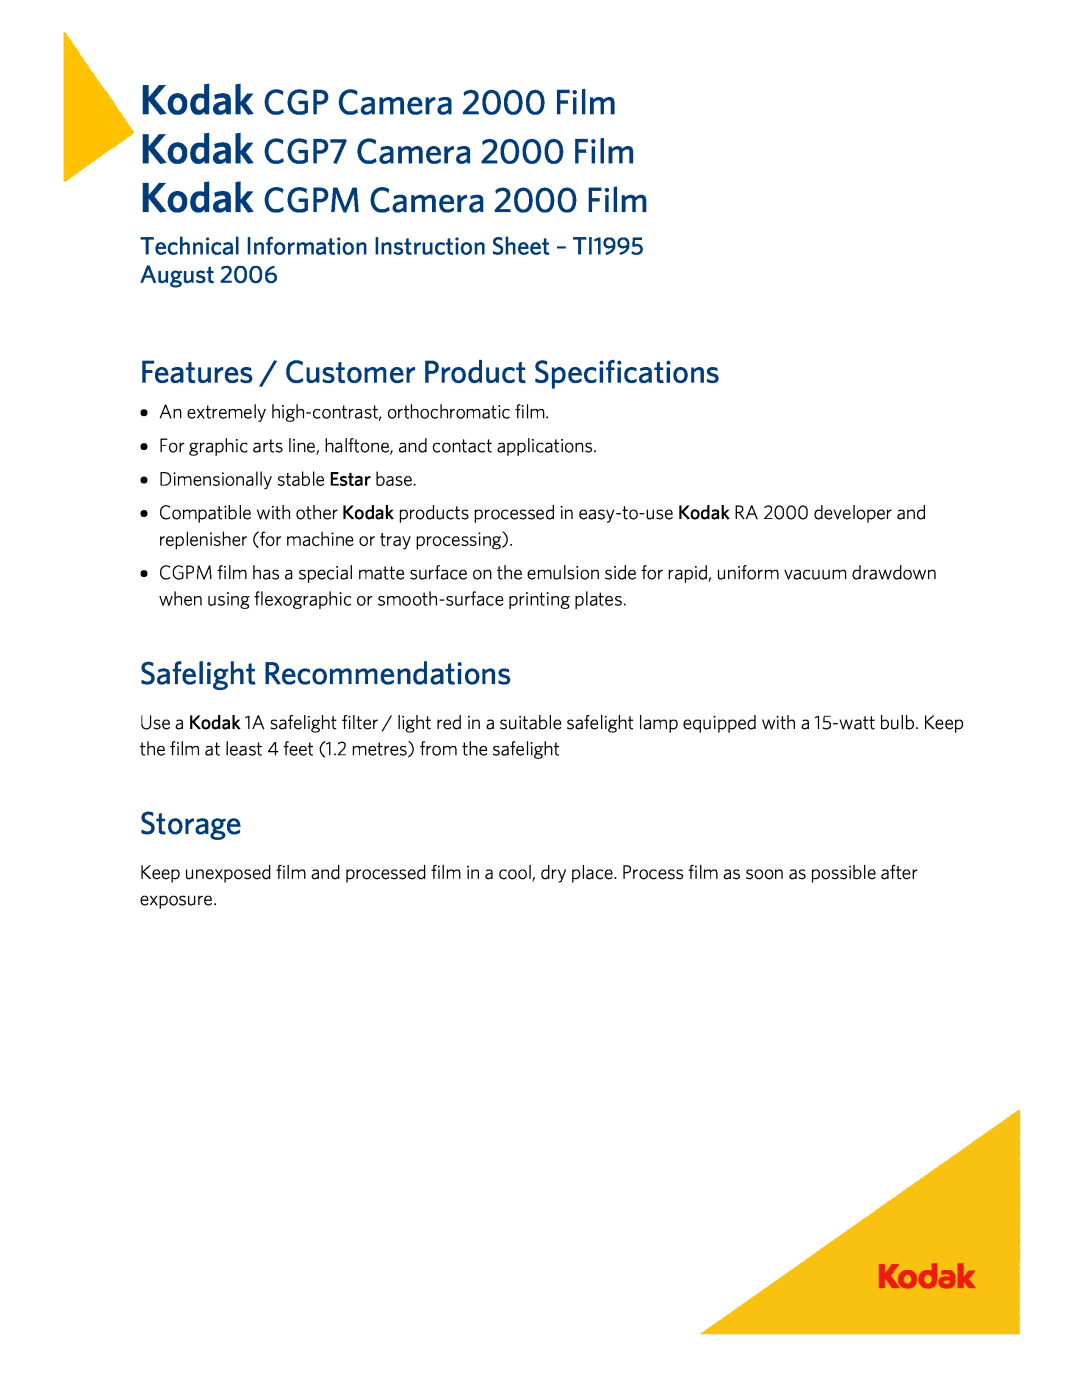 Kodak instruction sheet Kodak Kodak Kodak, CGP Camera 2000 Film CGP7 Camera 2000 Film CGPM Camera 2000 Film, Storage 